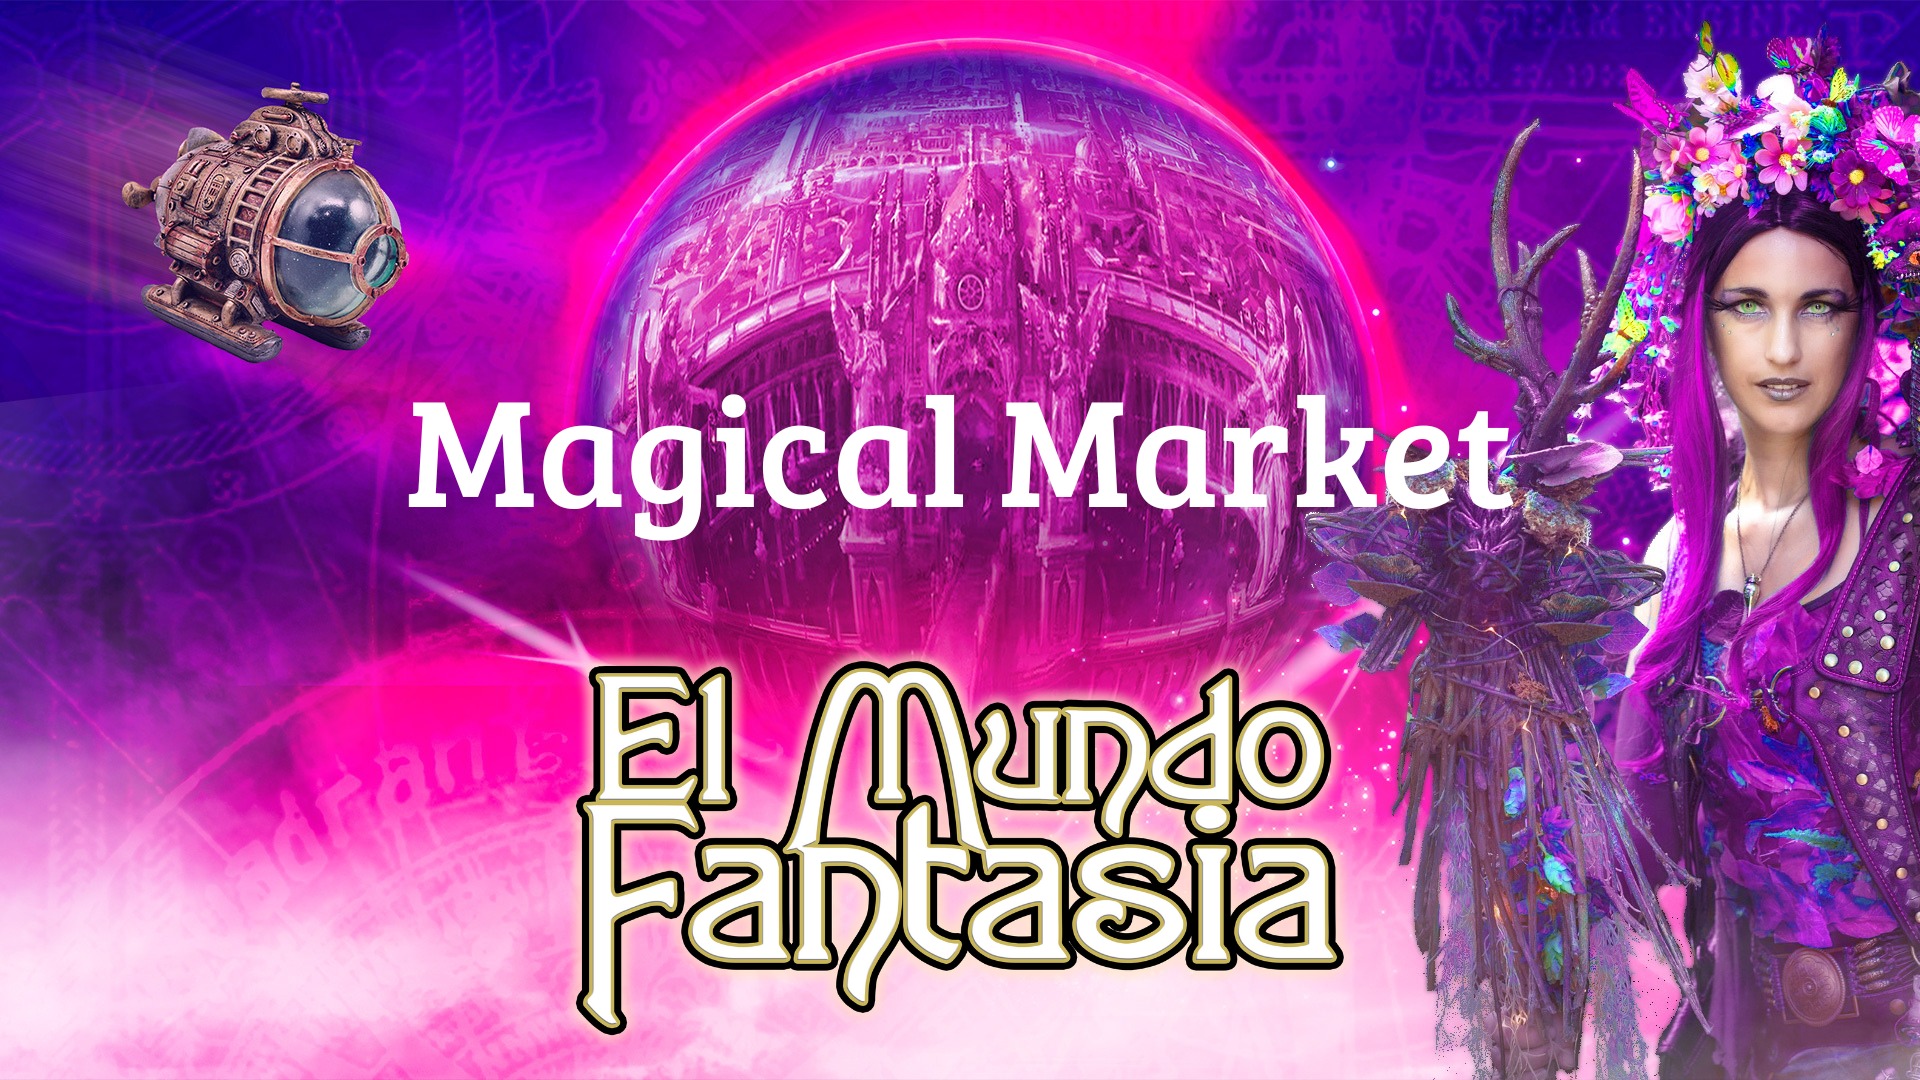 De Magical Market!